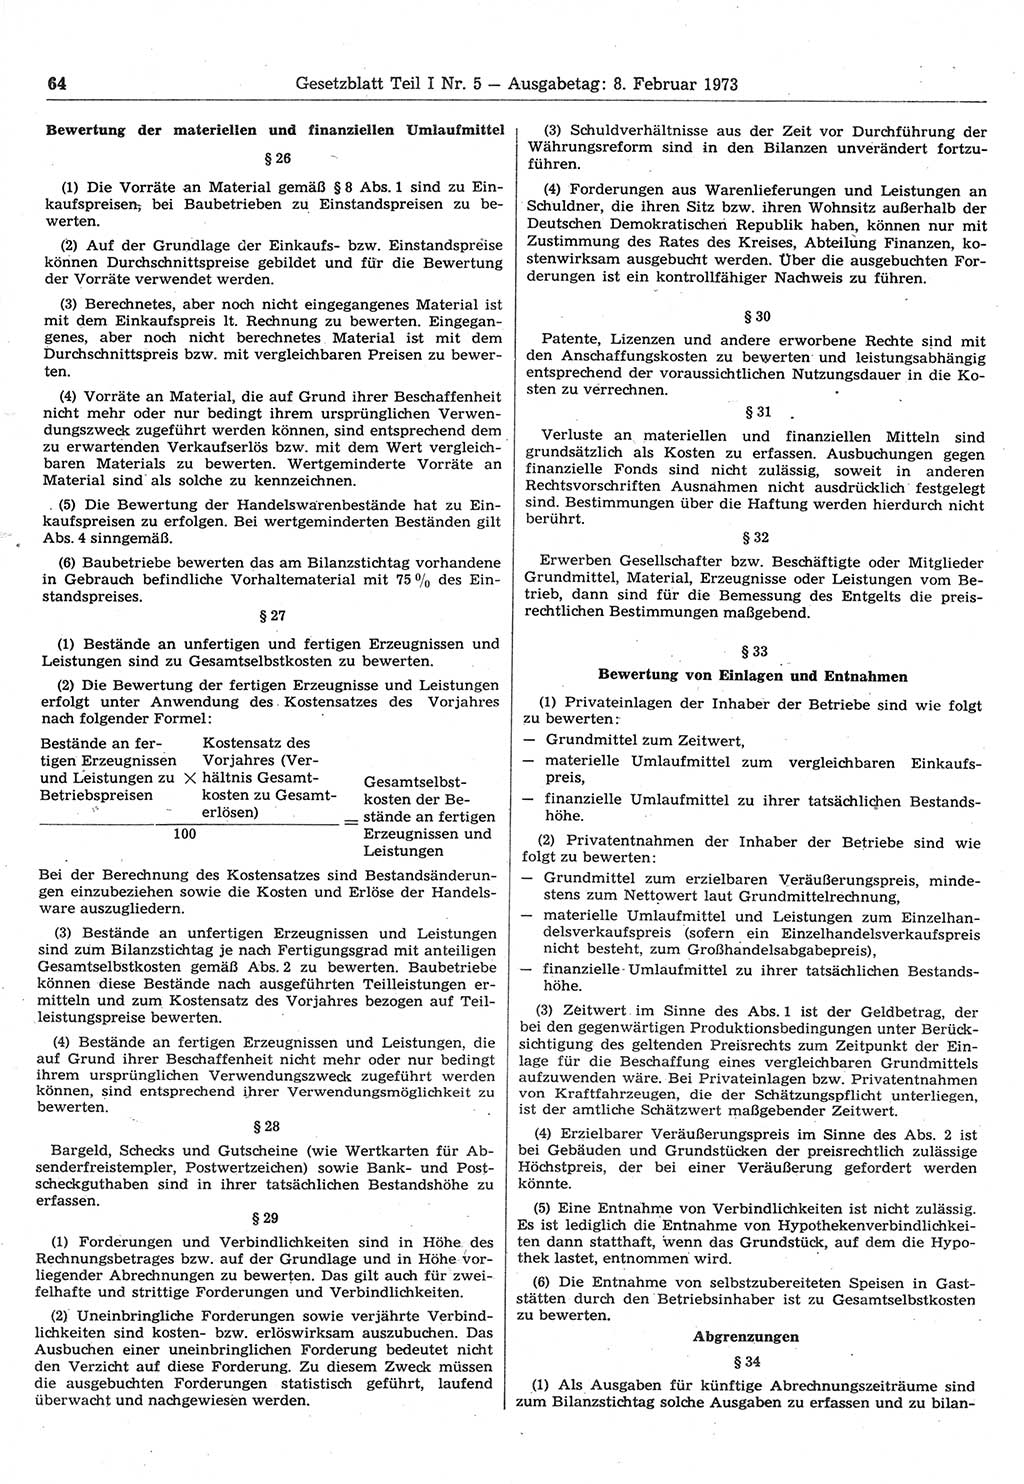 Gesetzblatt (GBl.) der Deutschen Demokratischen Republik (DDR) Teil Ⅰ 1973, Seite 64 (GBl. DDR Ⅰ 1973, S. 64)